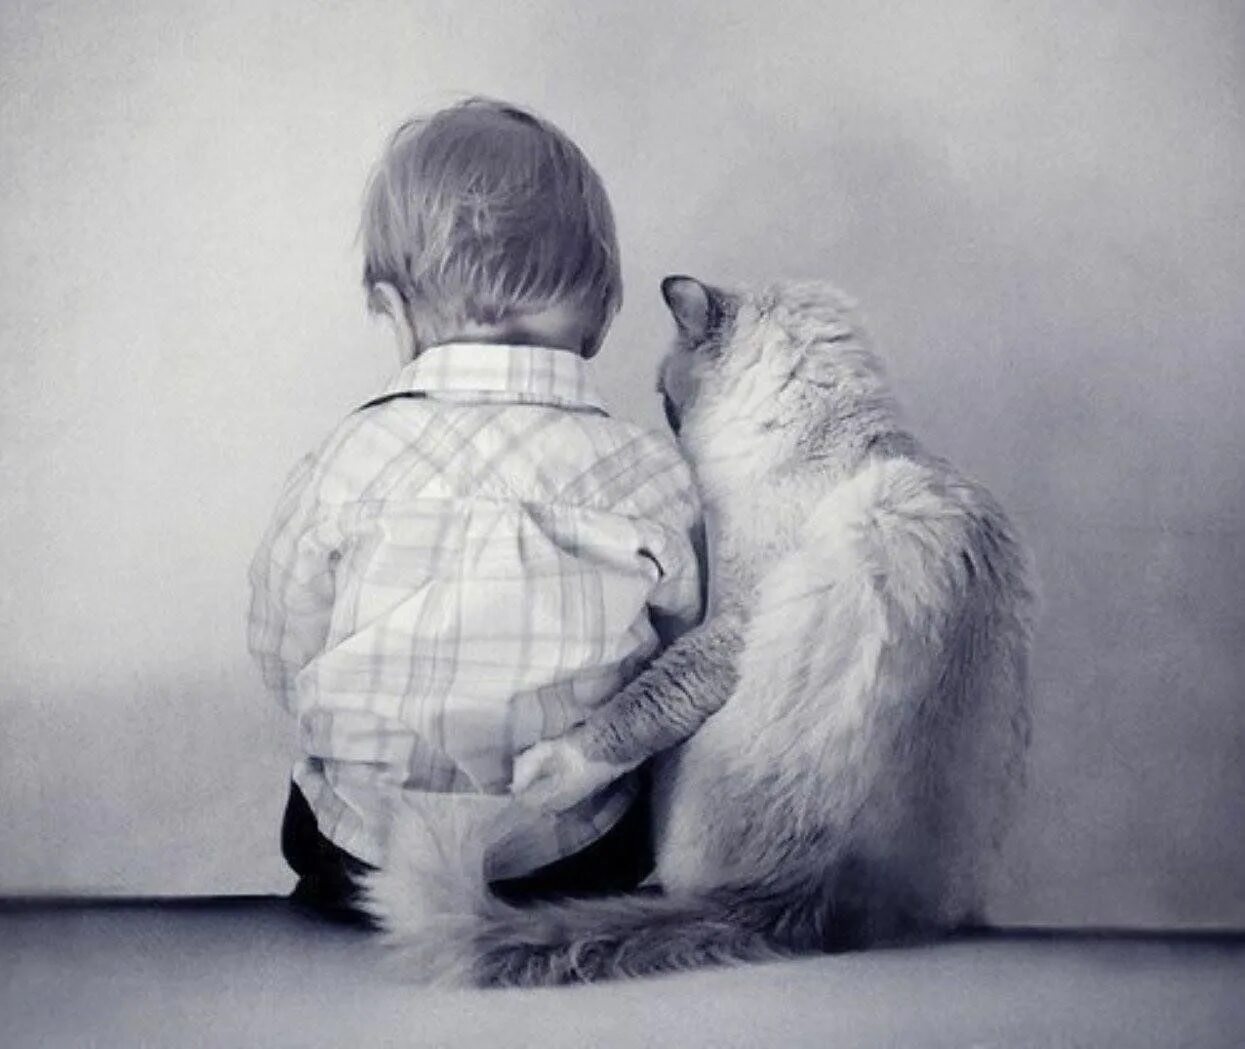 Будем просто дружить. Мальчик обнимает кота. Обнимашки людей. Поддержка в трудную минуту. Объятия животных.